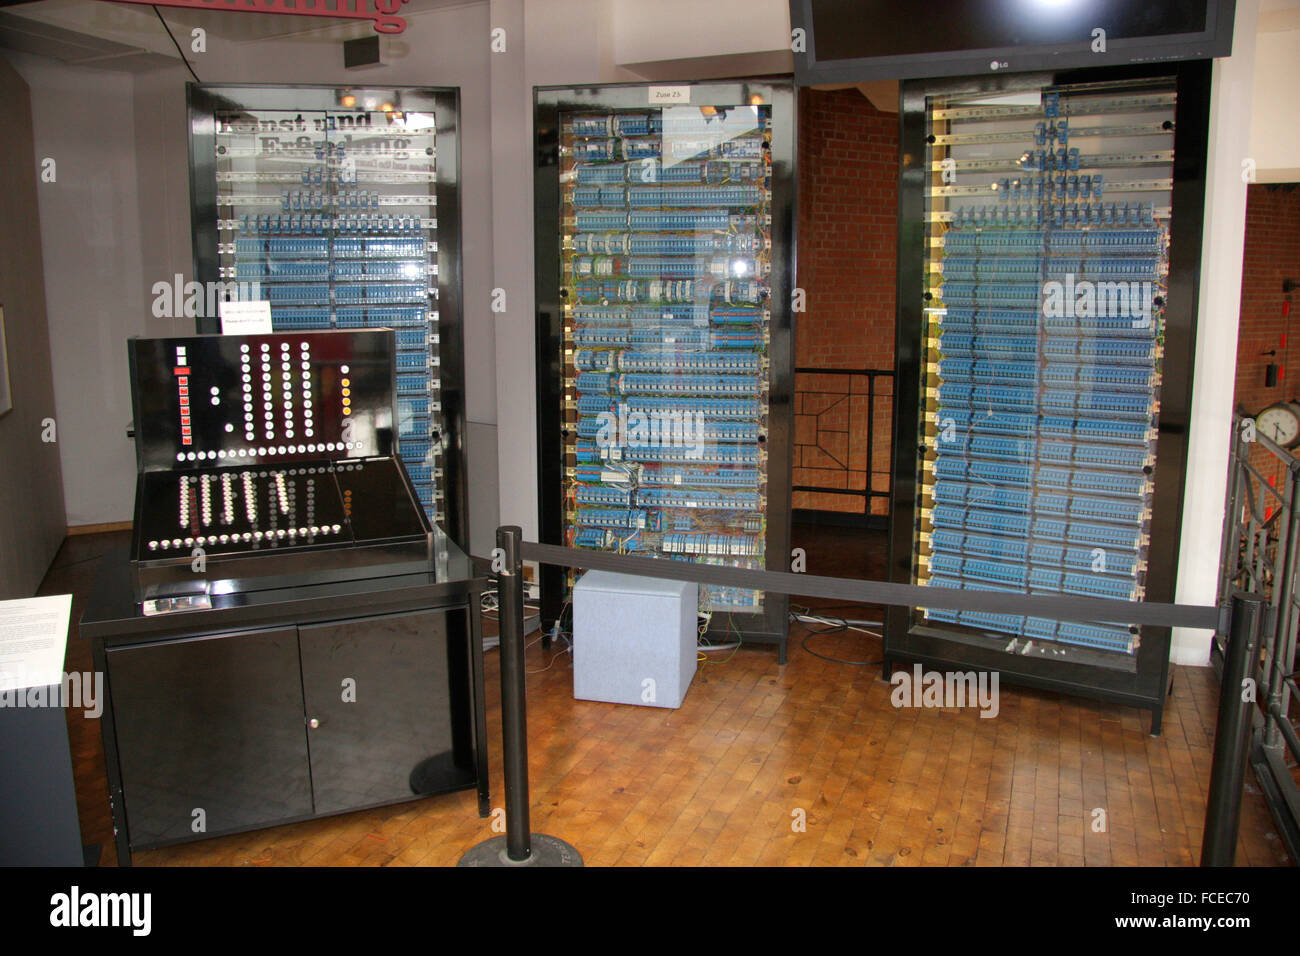 Z3 Computer von Konrad Zuse - Deutsches Technikmuseum, Berlin-Kreuzberg. Stock Photo